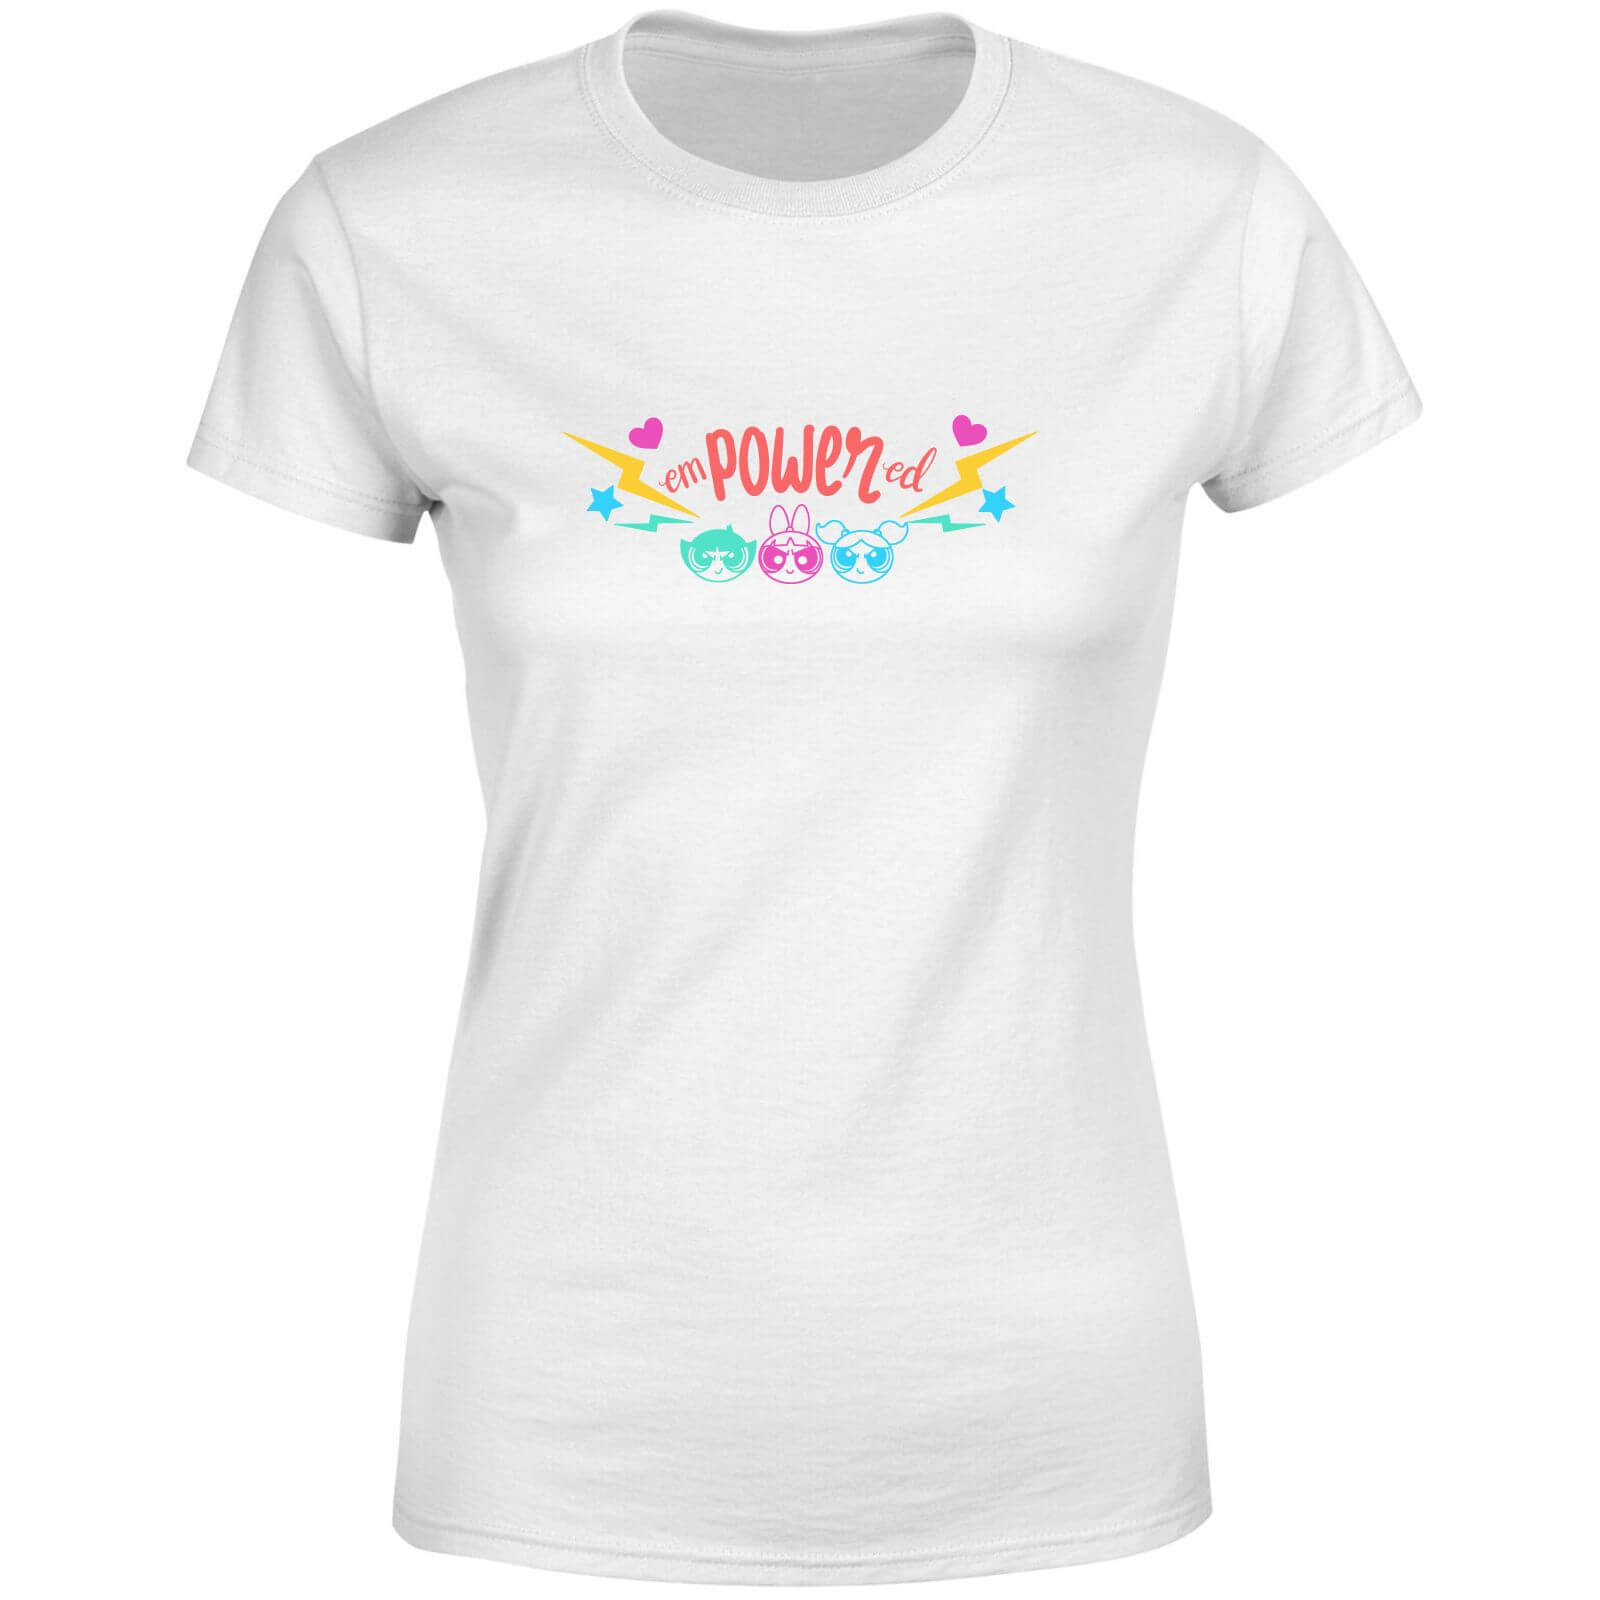 The Powerpuff Girls Empowered Women's T-Shirt - White - S - White